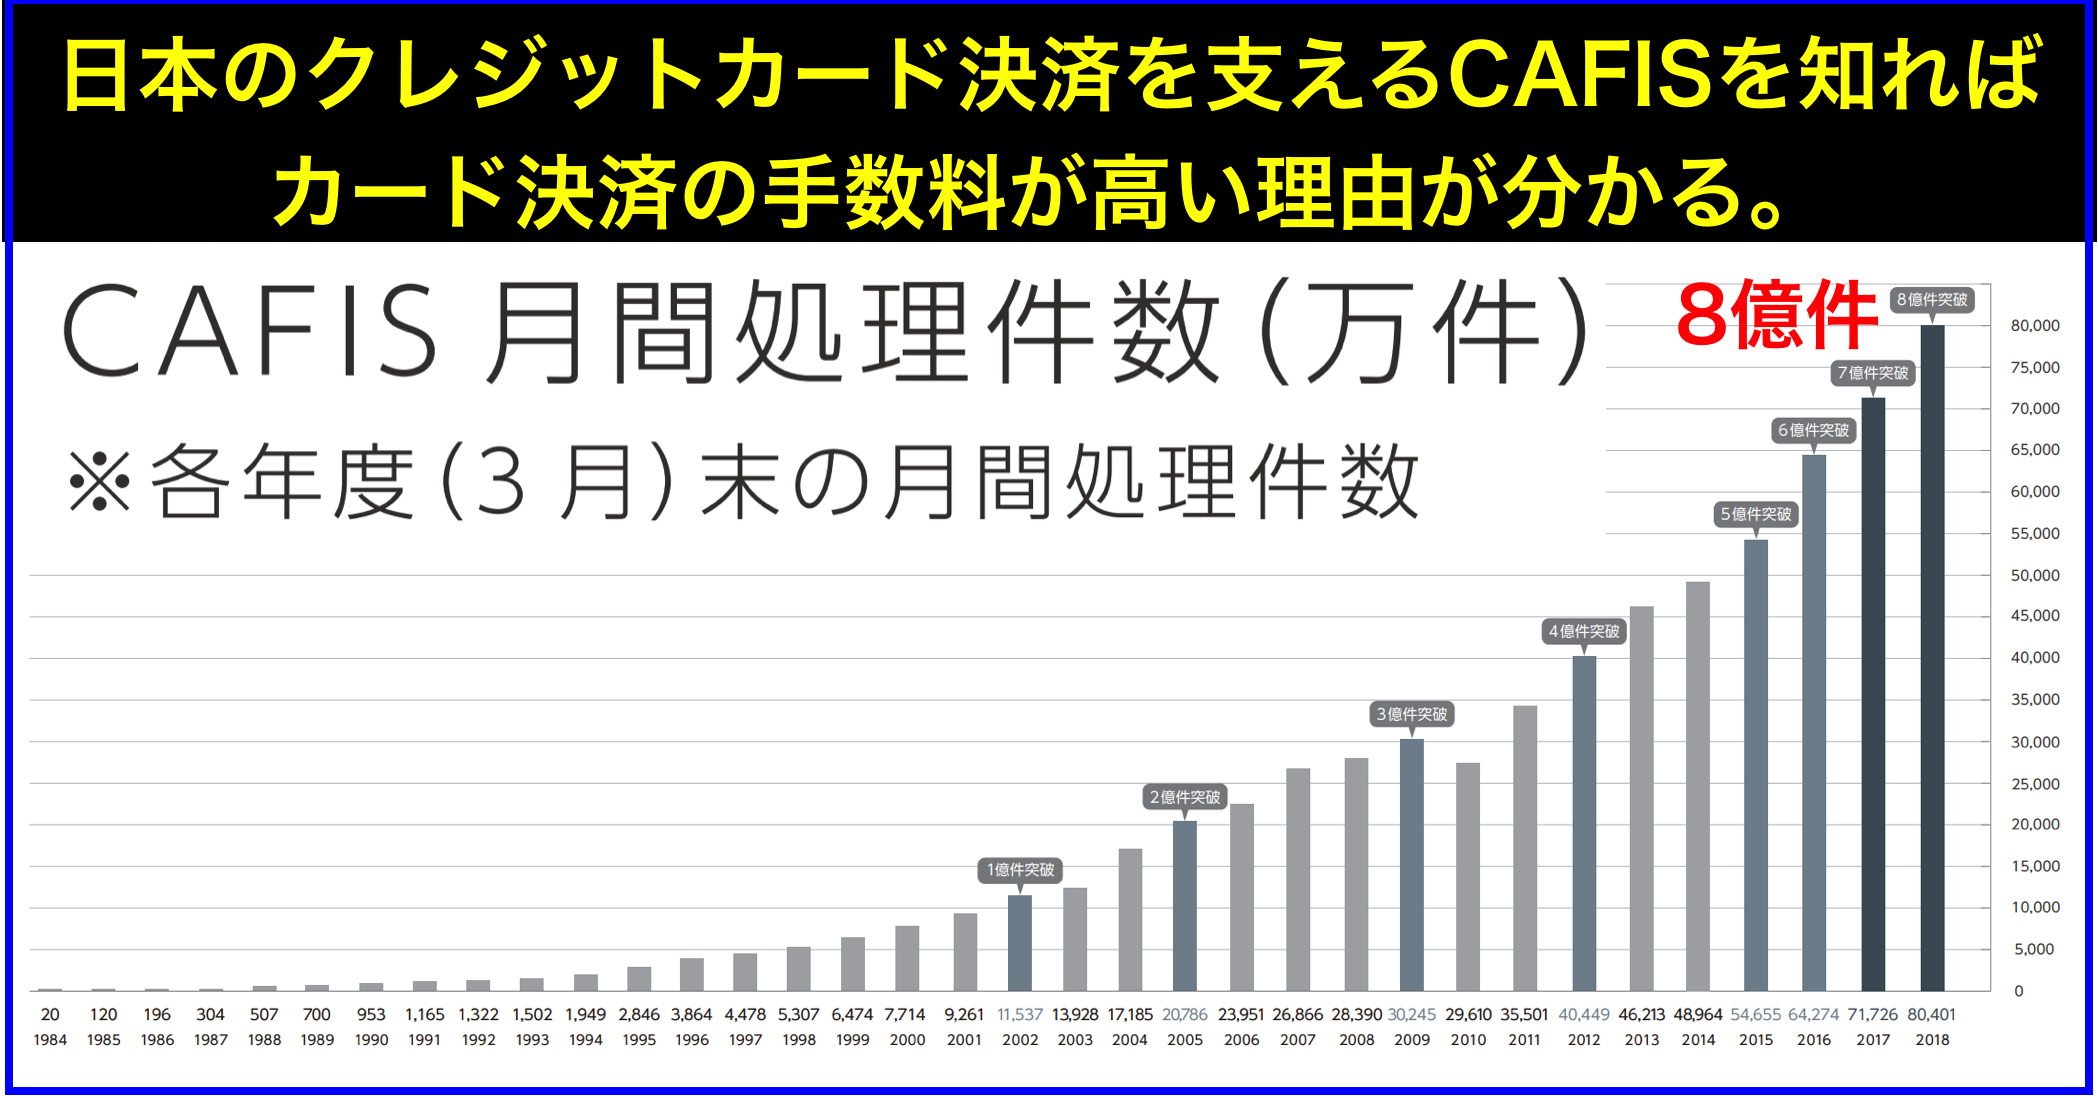 日本のクレジットカード決済を支えるNTTデータの｢CAFIS｣